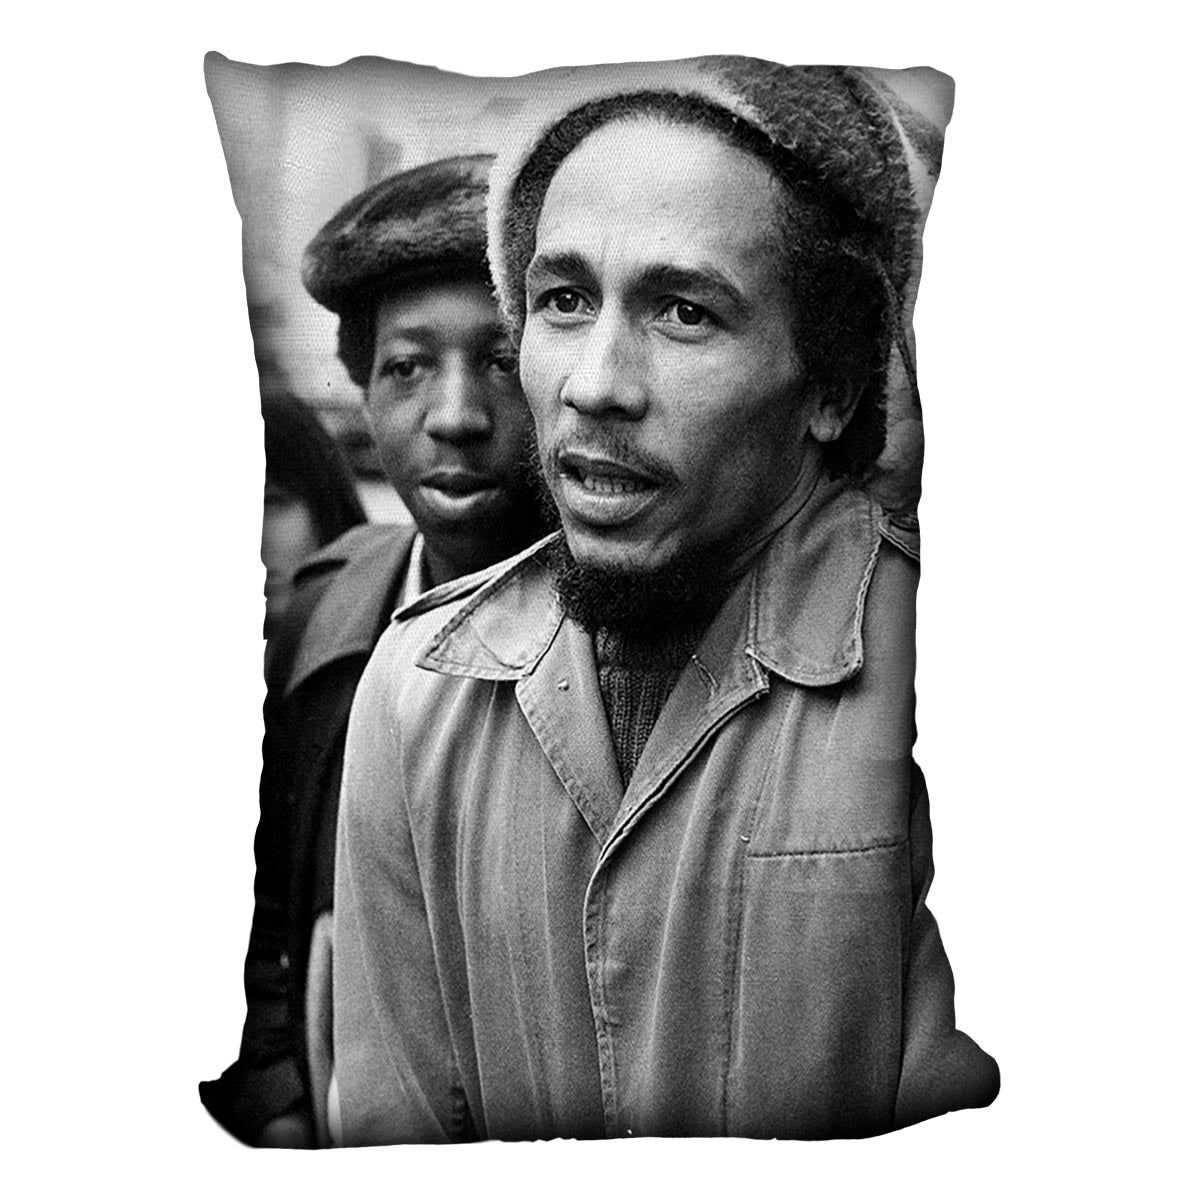 Bob Marley in London Cushion